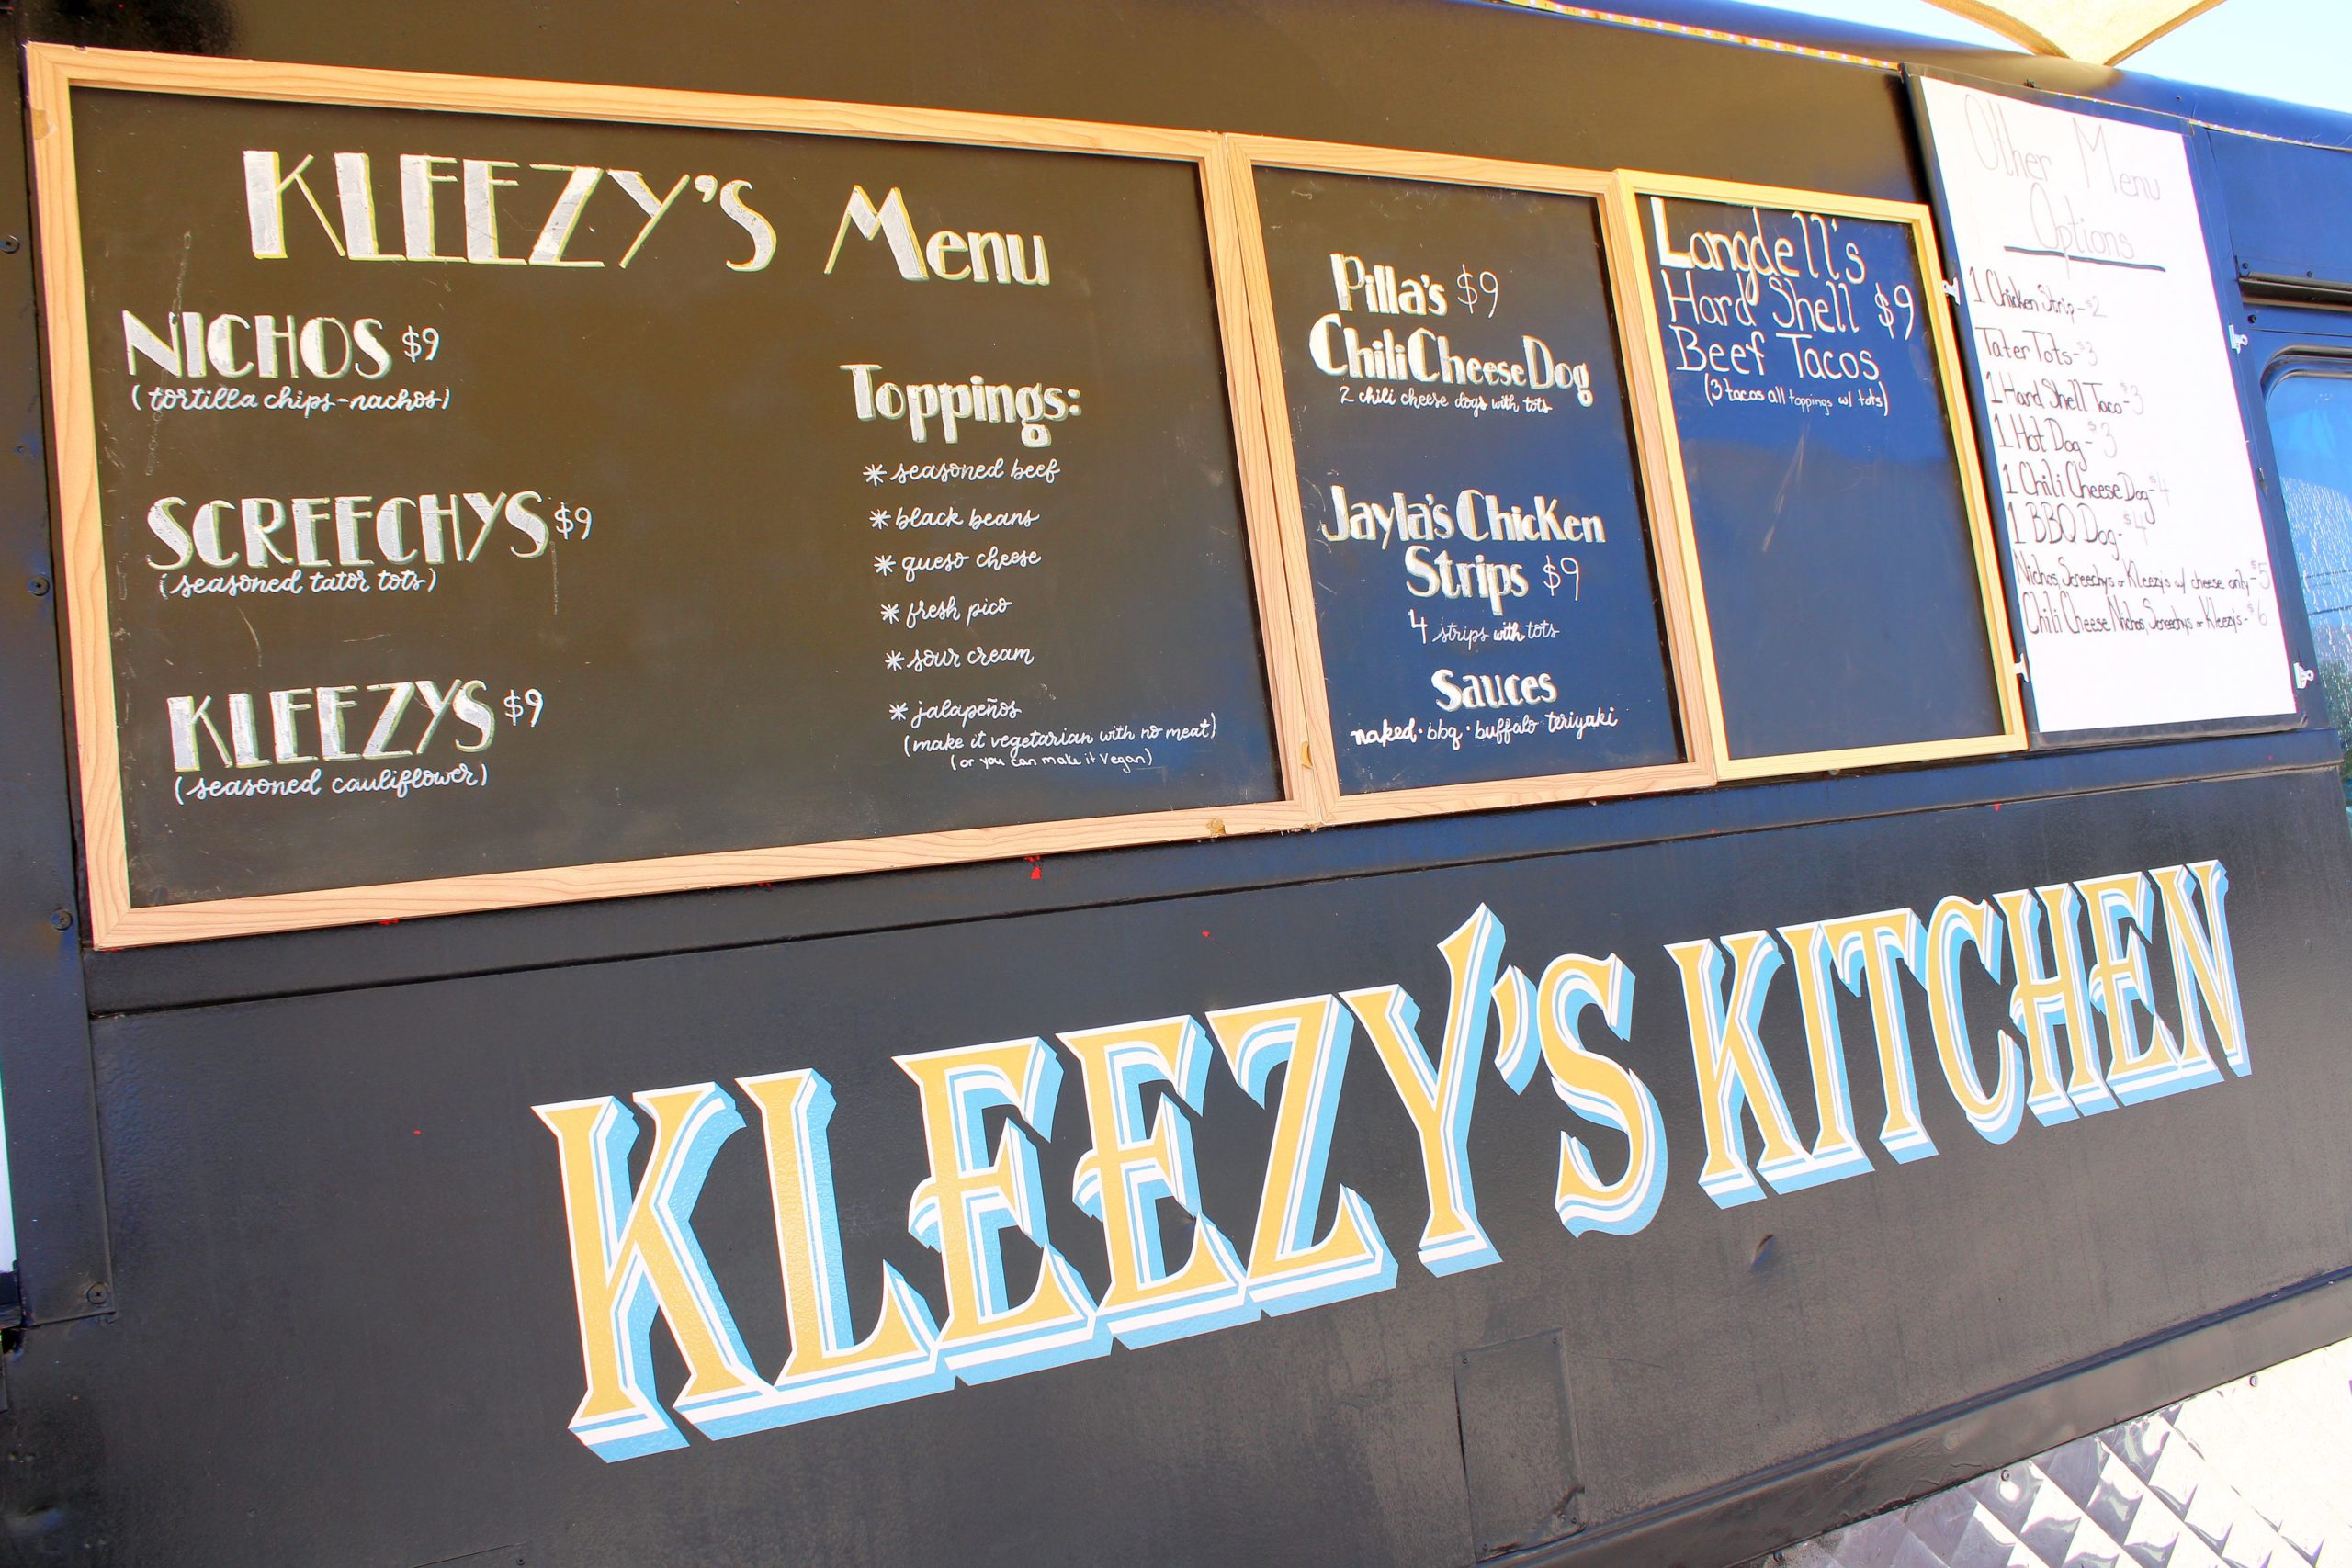 Kleezy's Kitchen